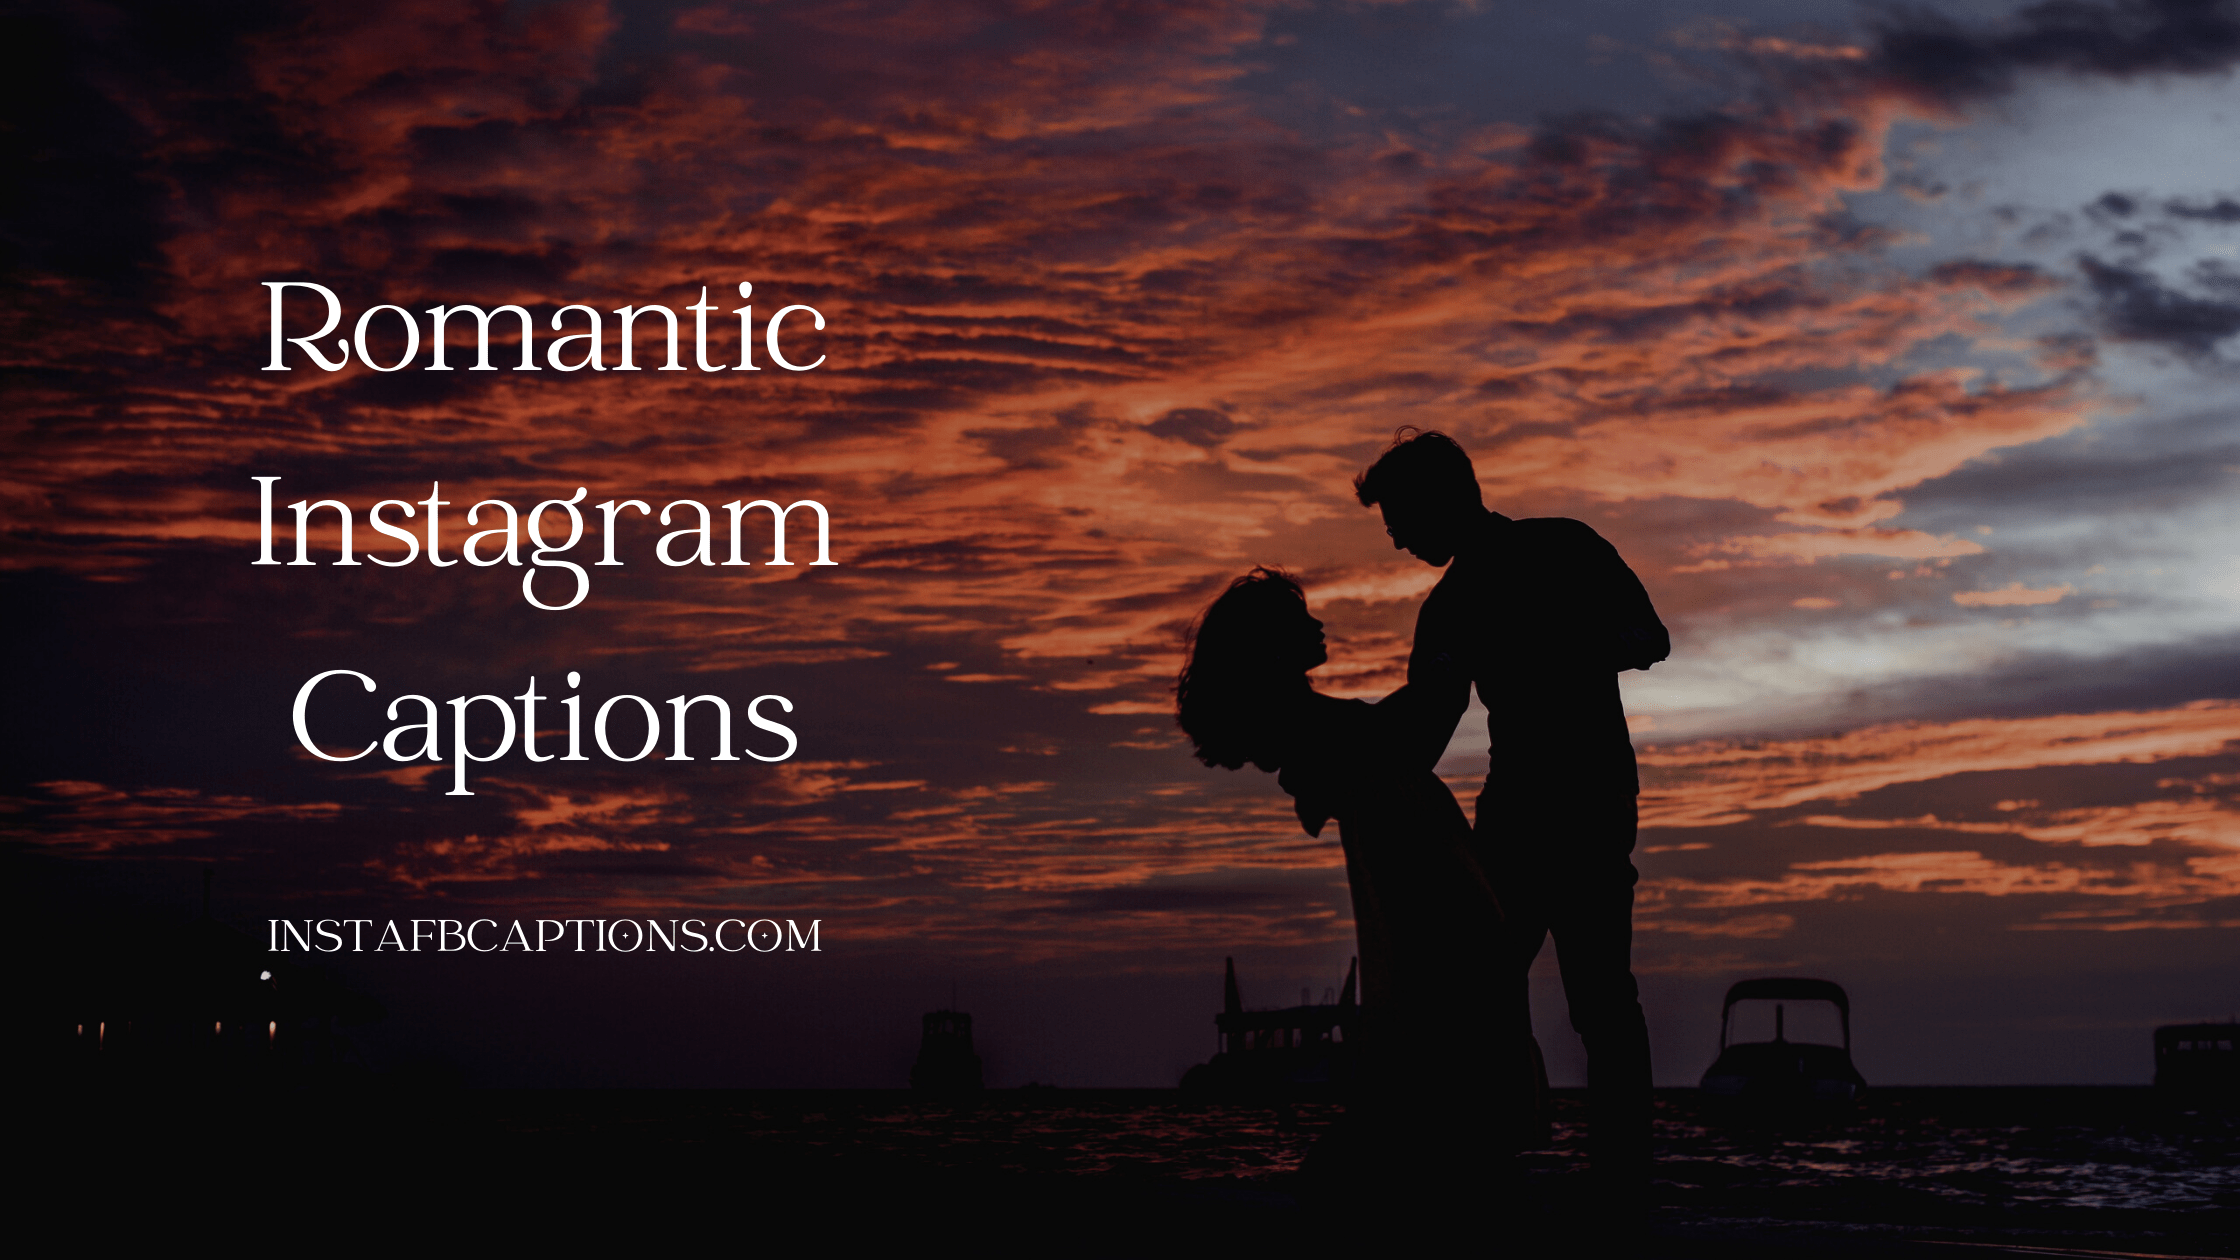 Romantic Instagram Captions  - Romantic Instagram Captions - 96 Romantic Instagram Captions and Quotes for Love in 2022